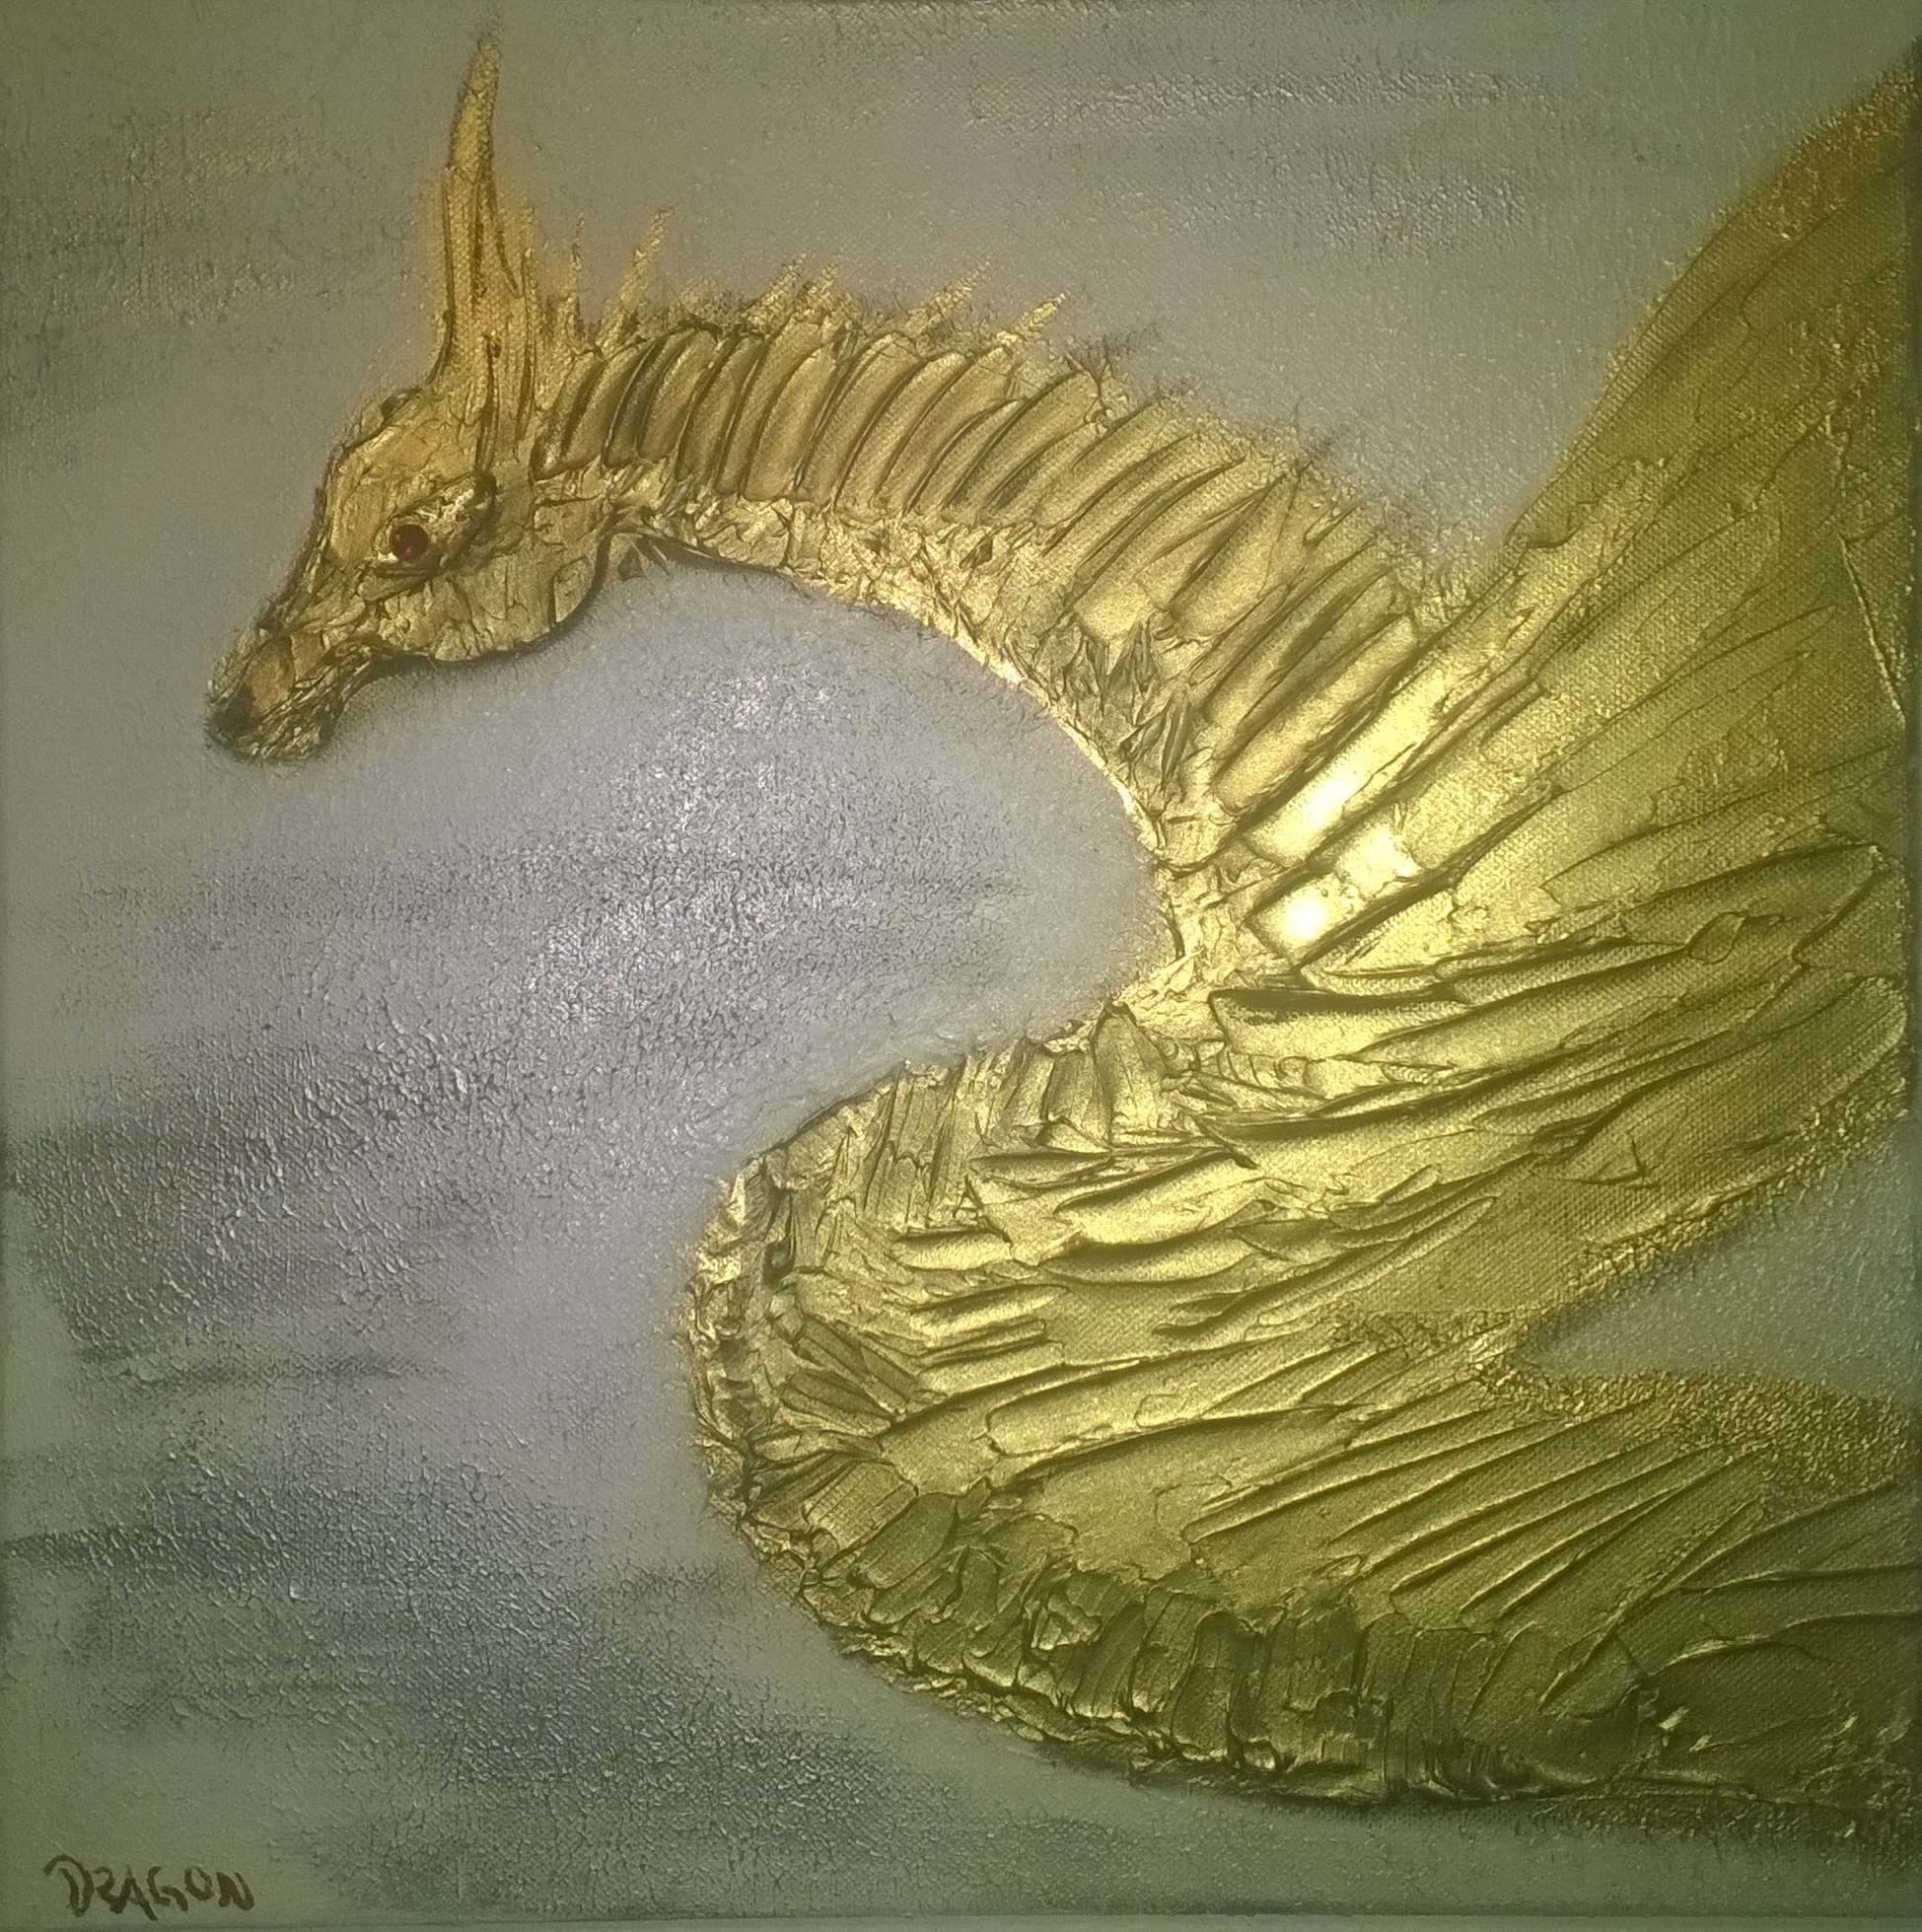 Chrigel's Art 4 You - 3D Bild: "Goldener Drache"